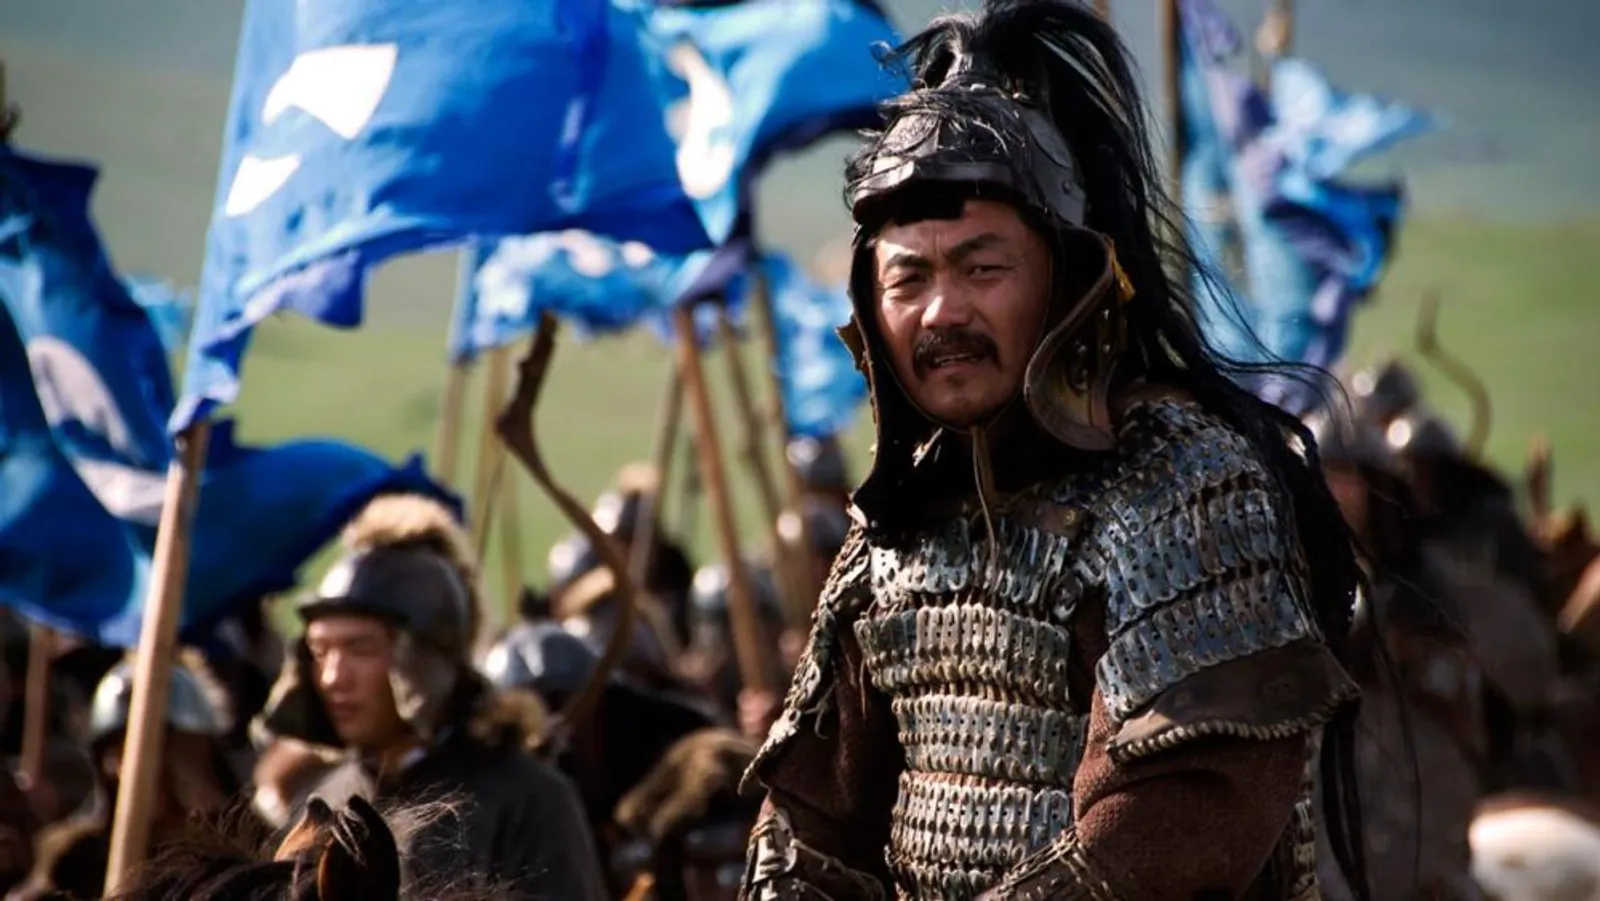 11 Aturan yang Harus Dipatuhi Perempuan di Zaman Genghis Khan